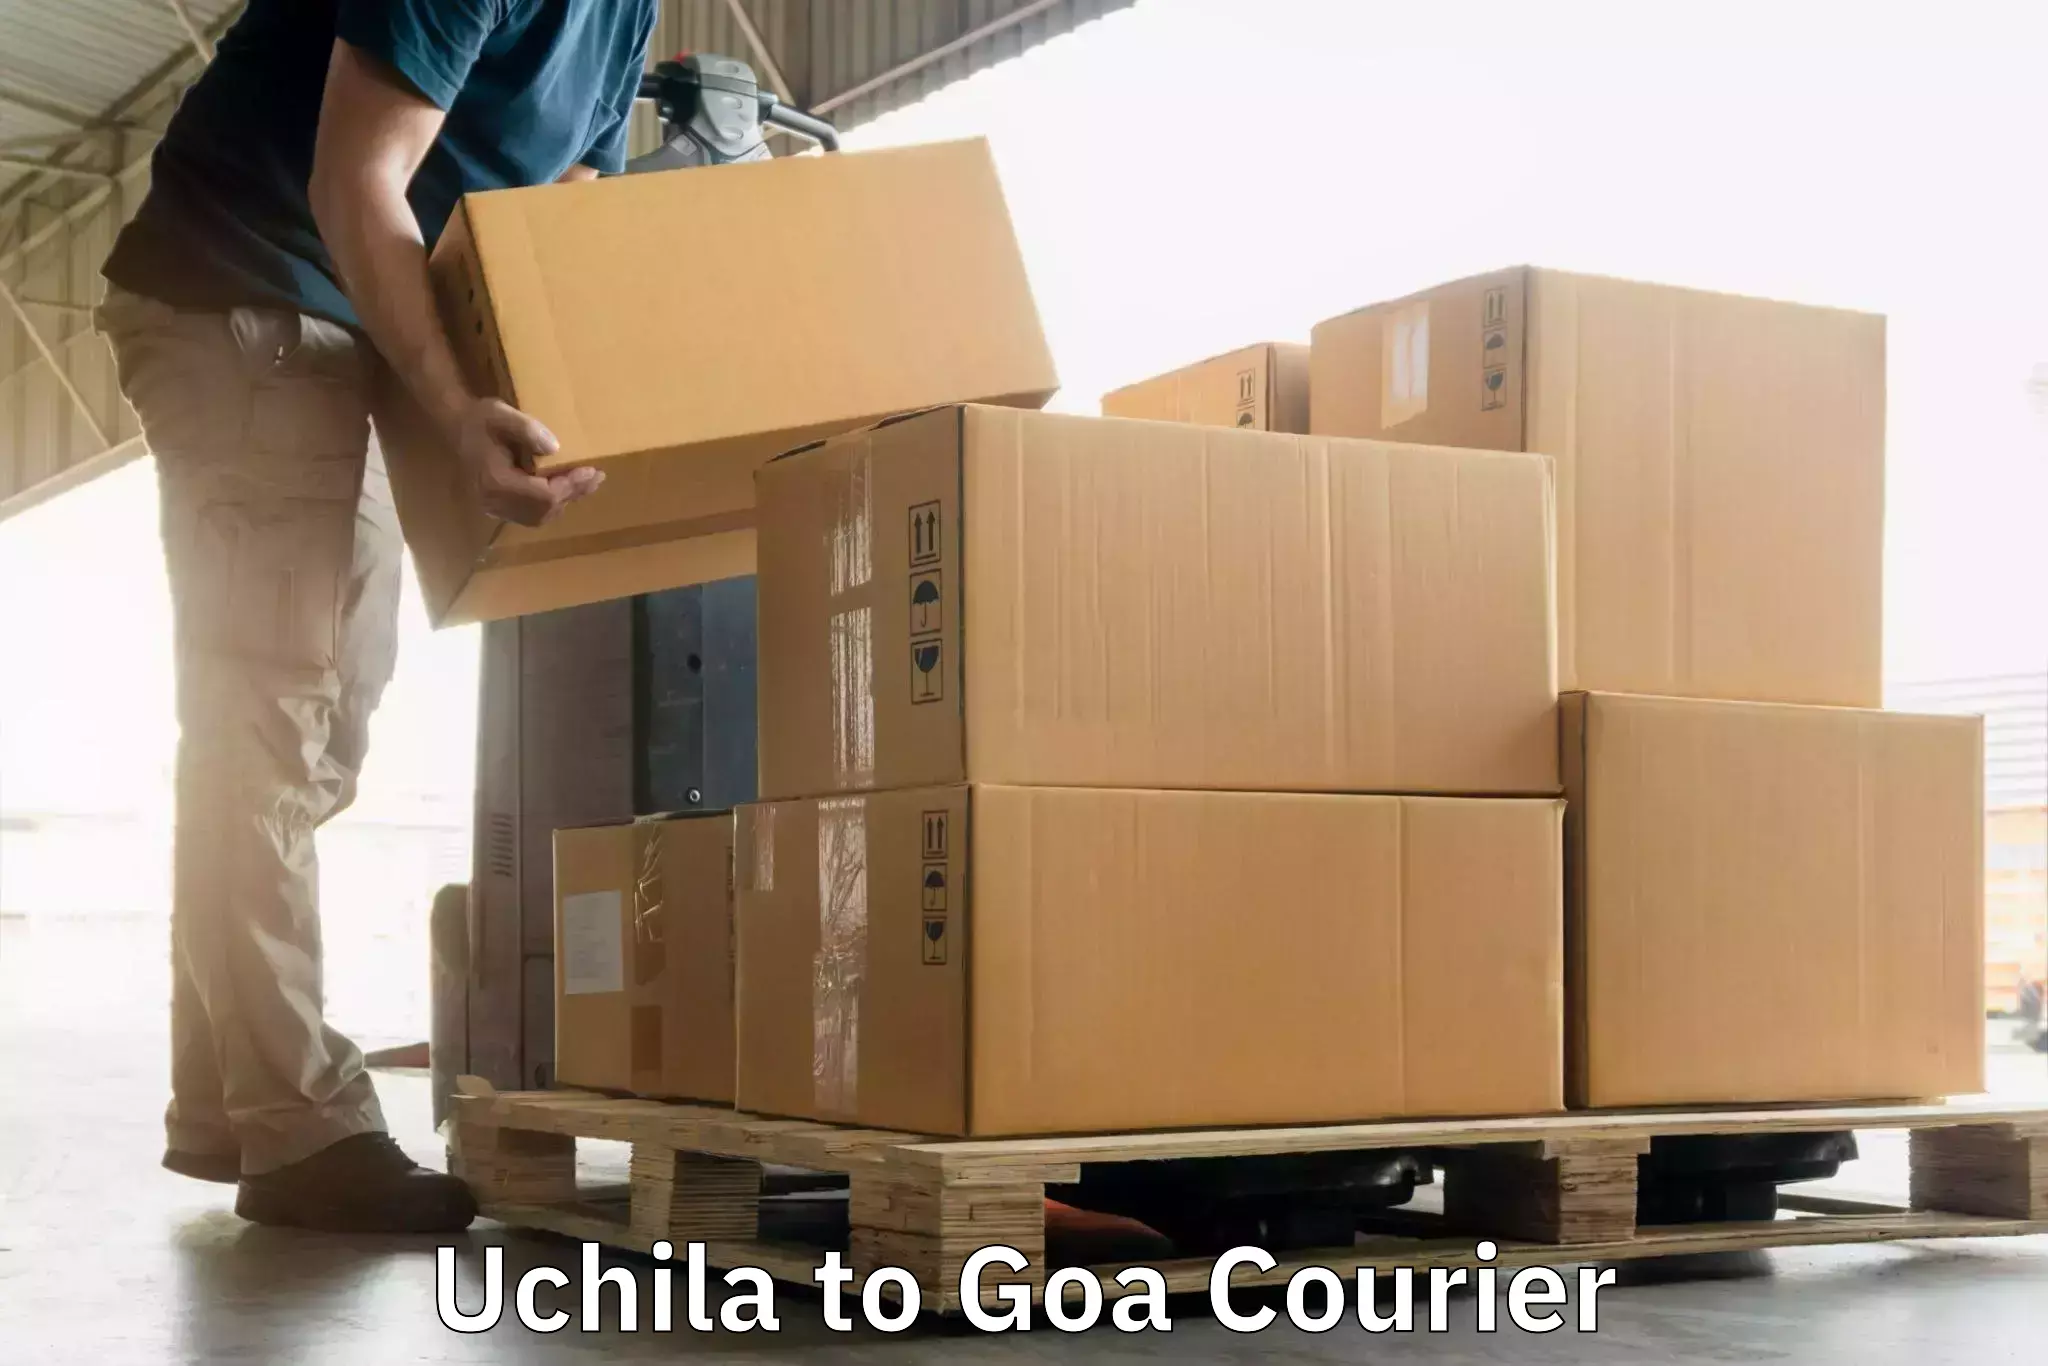 Express courier capabilities in Uchila to Panaji